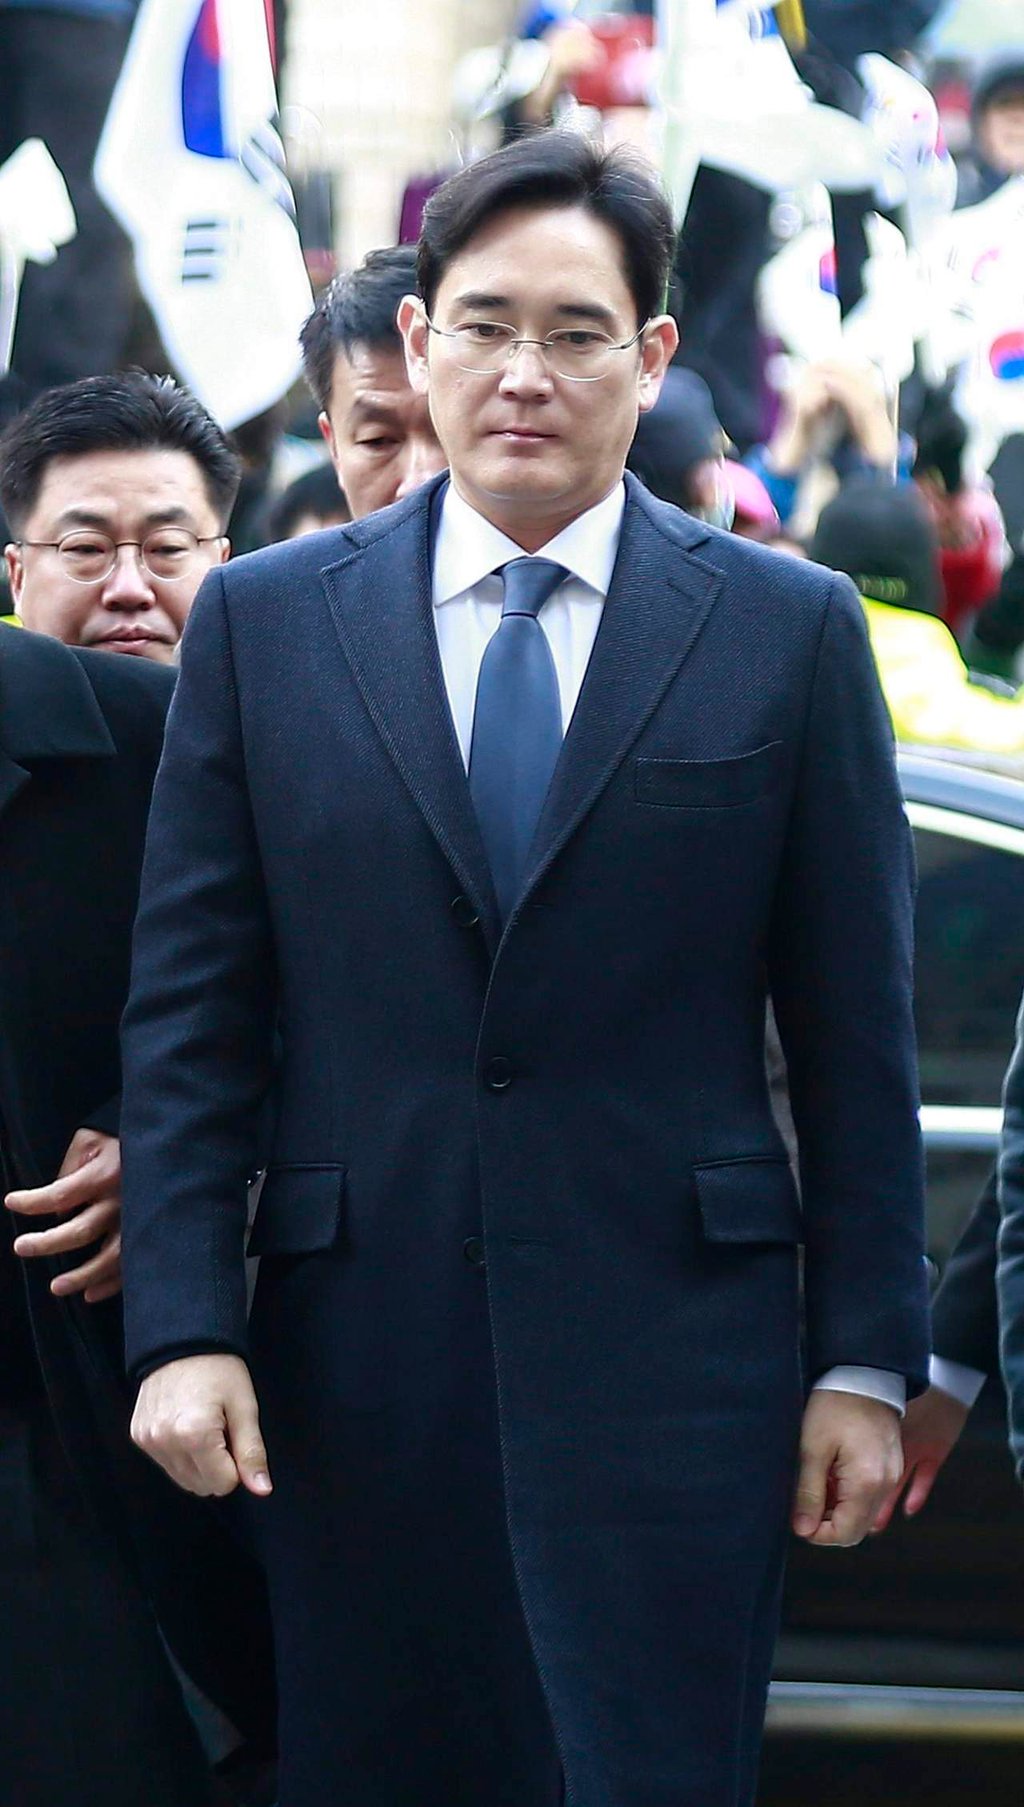 Aprueba arresto corte surcoreana a heredero de Samsung por caso Rasputina